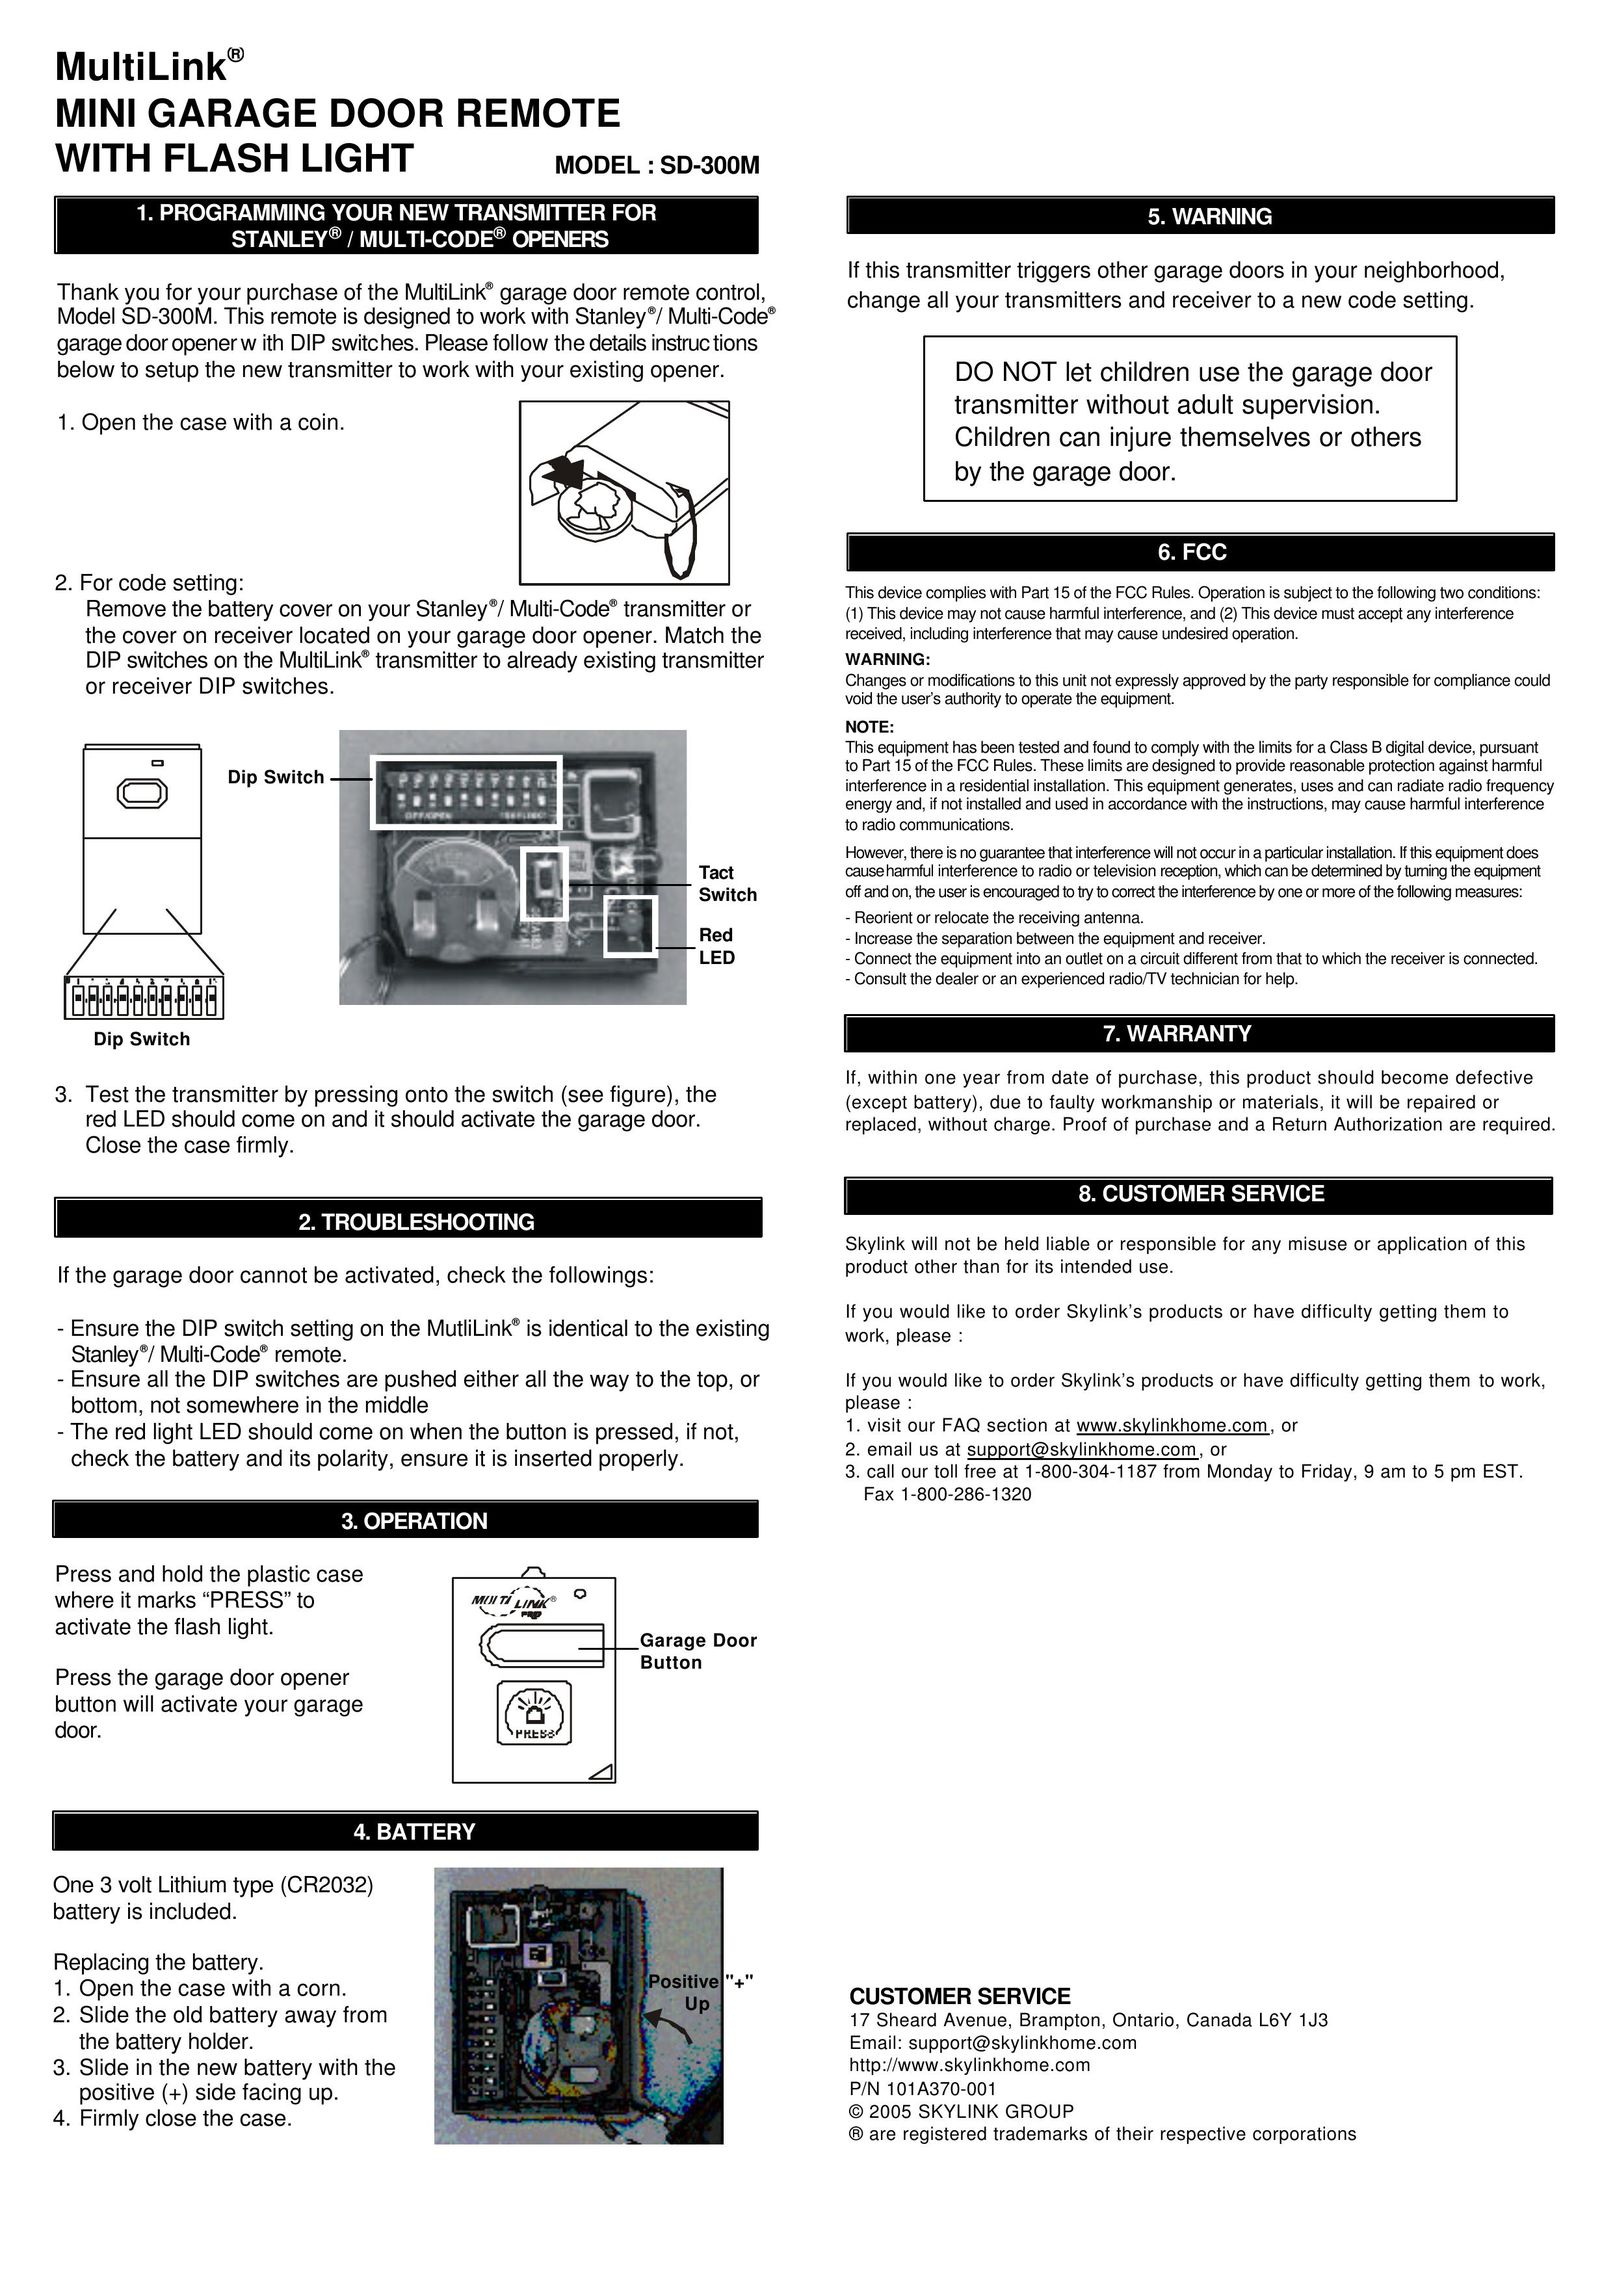 Multi-Link SD-300M Garage Door Opener User Manual